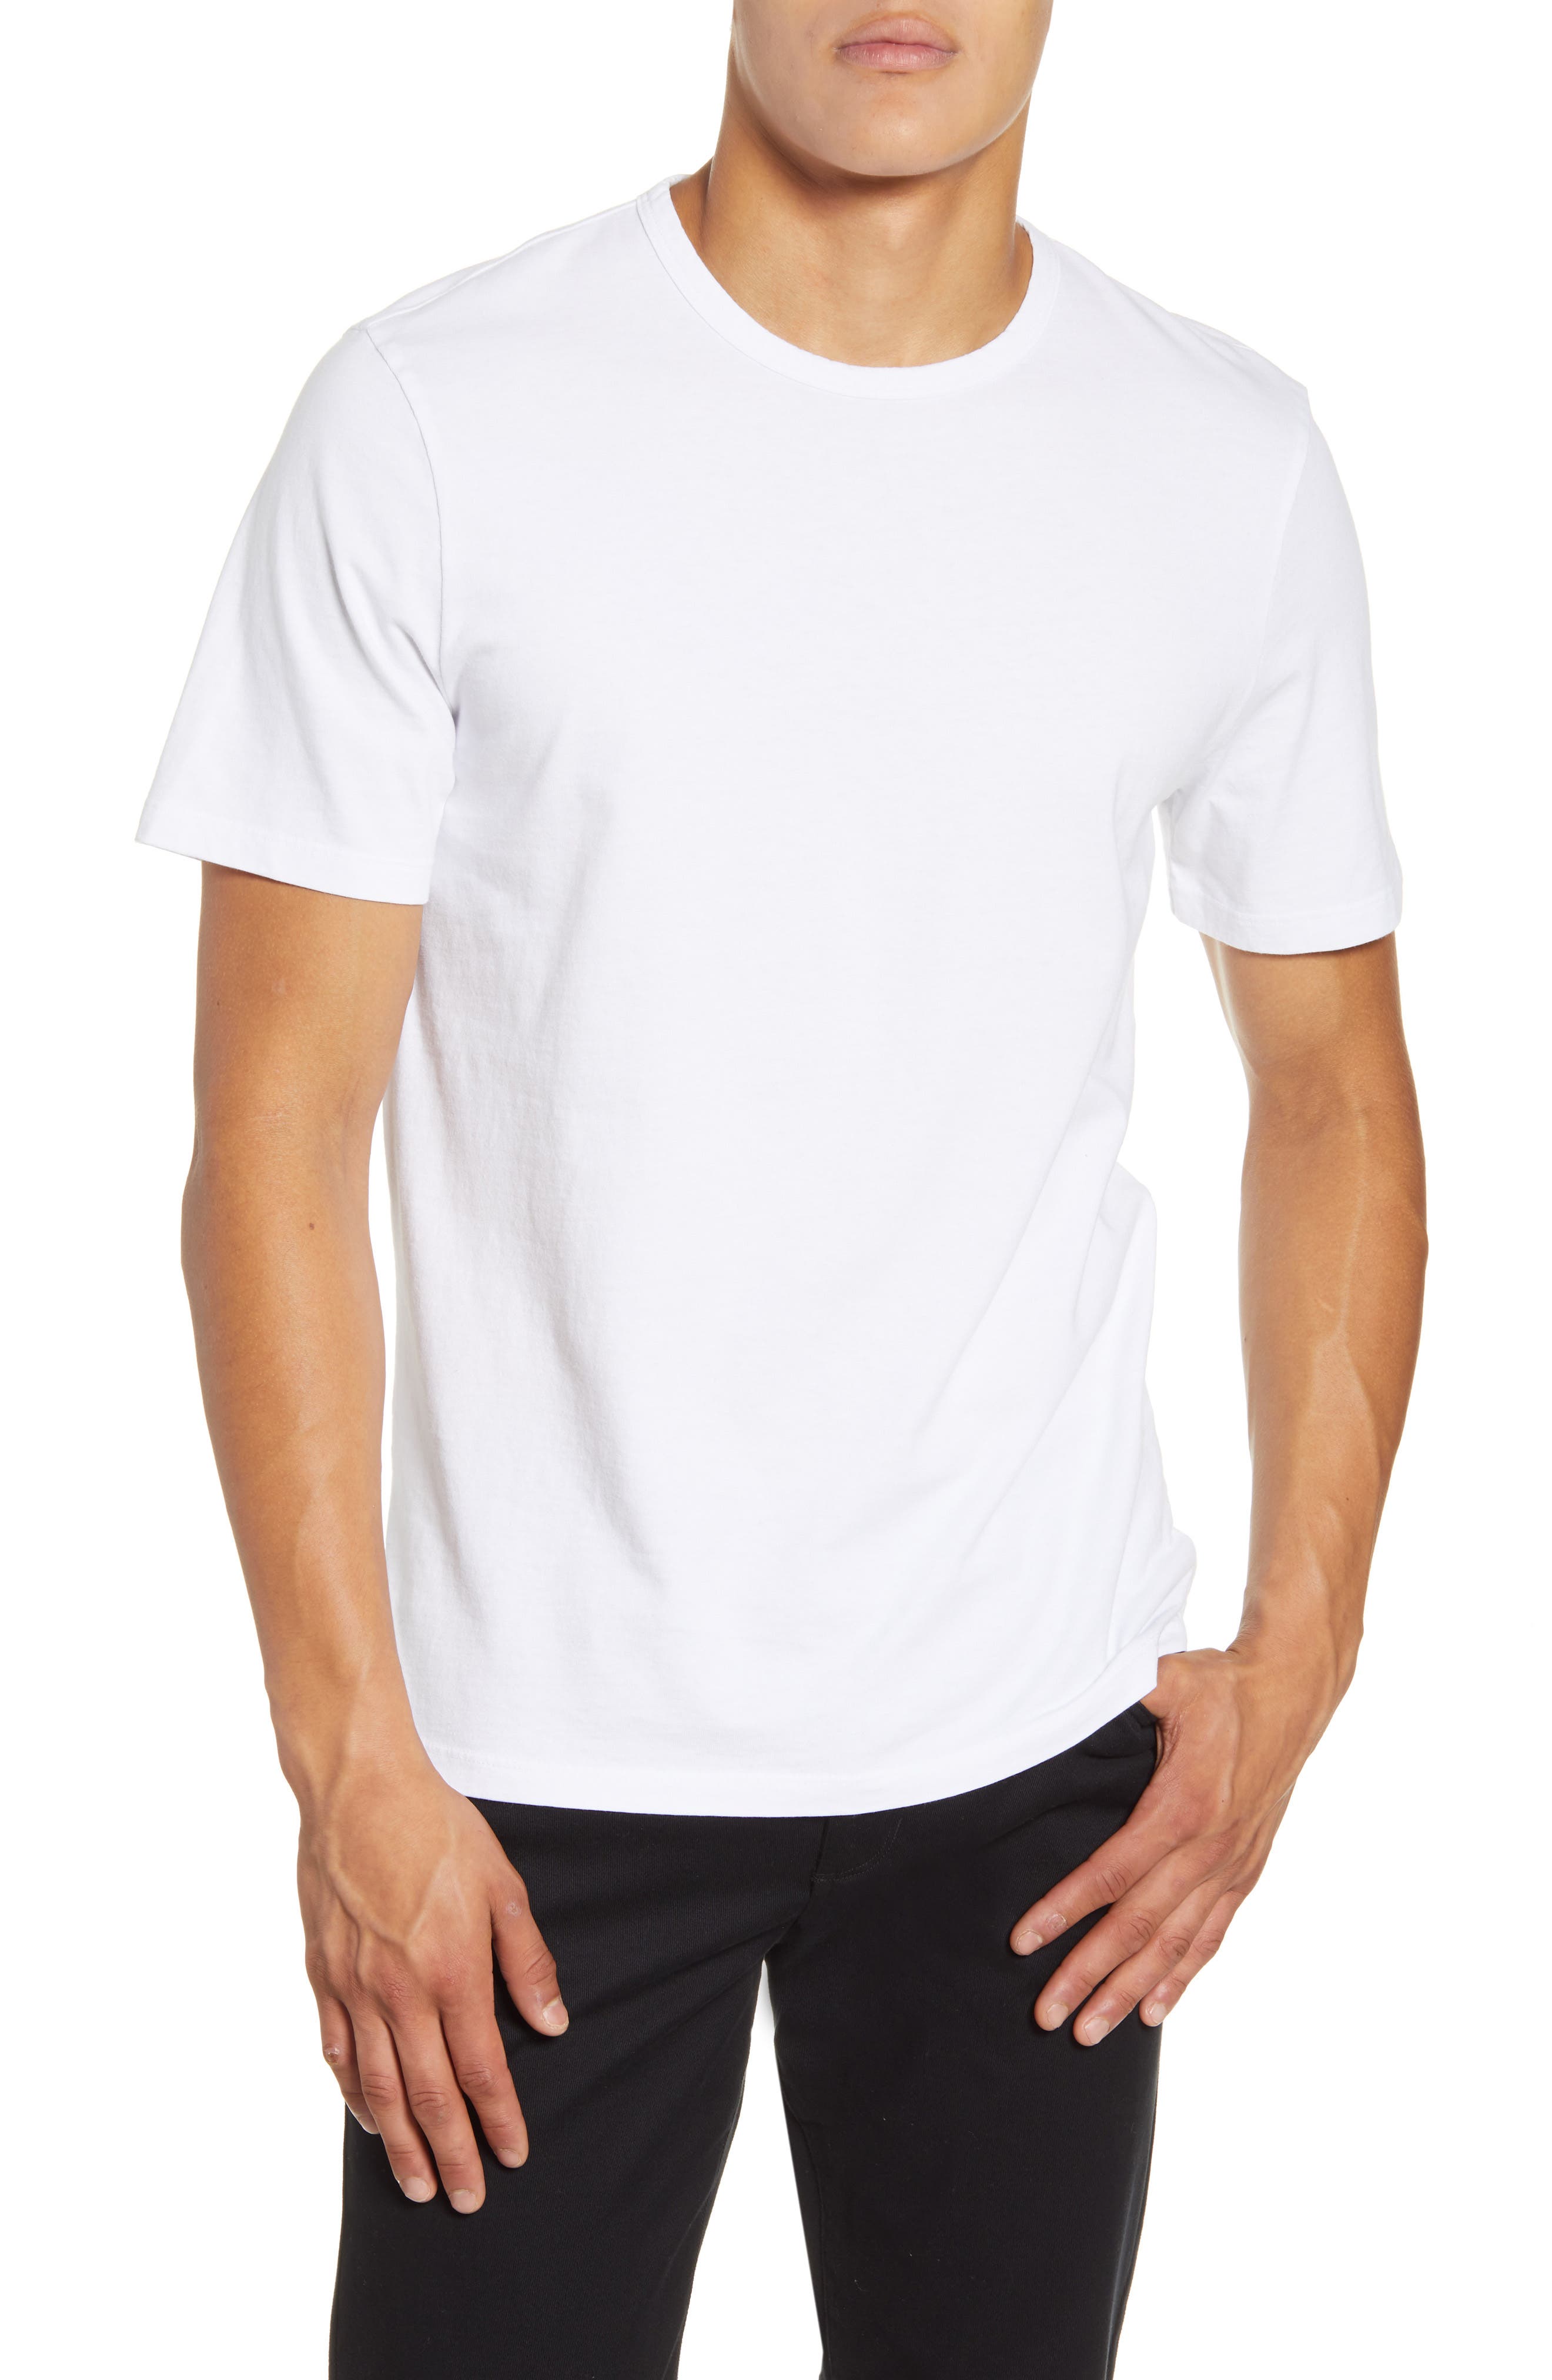 man in white tee shirt